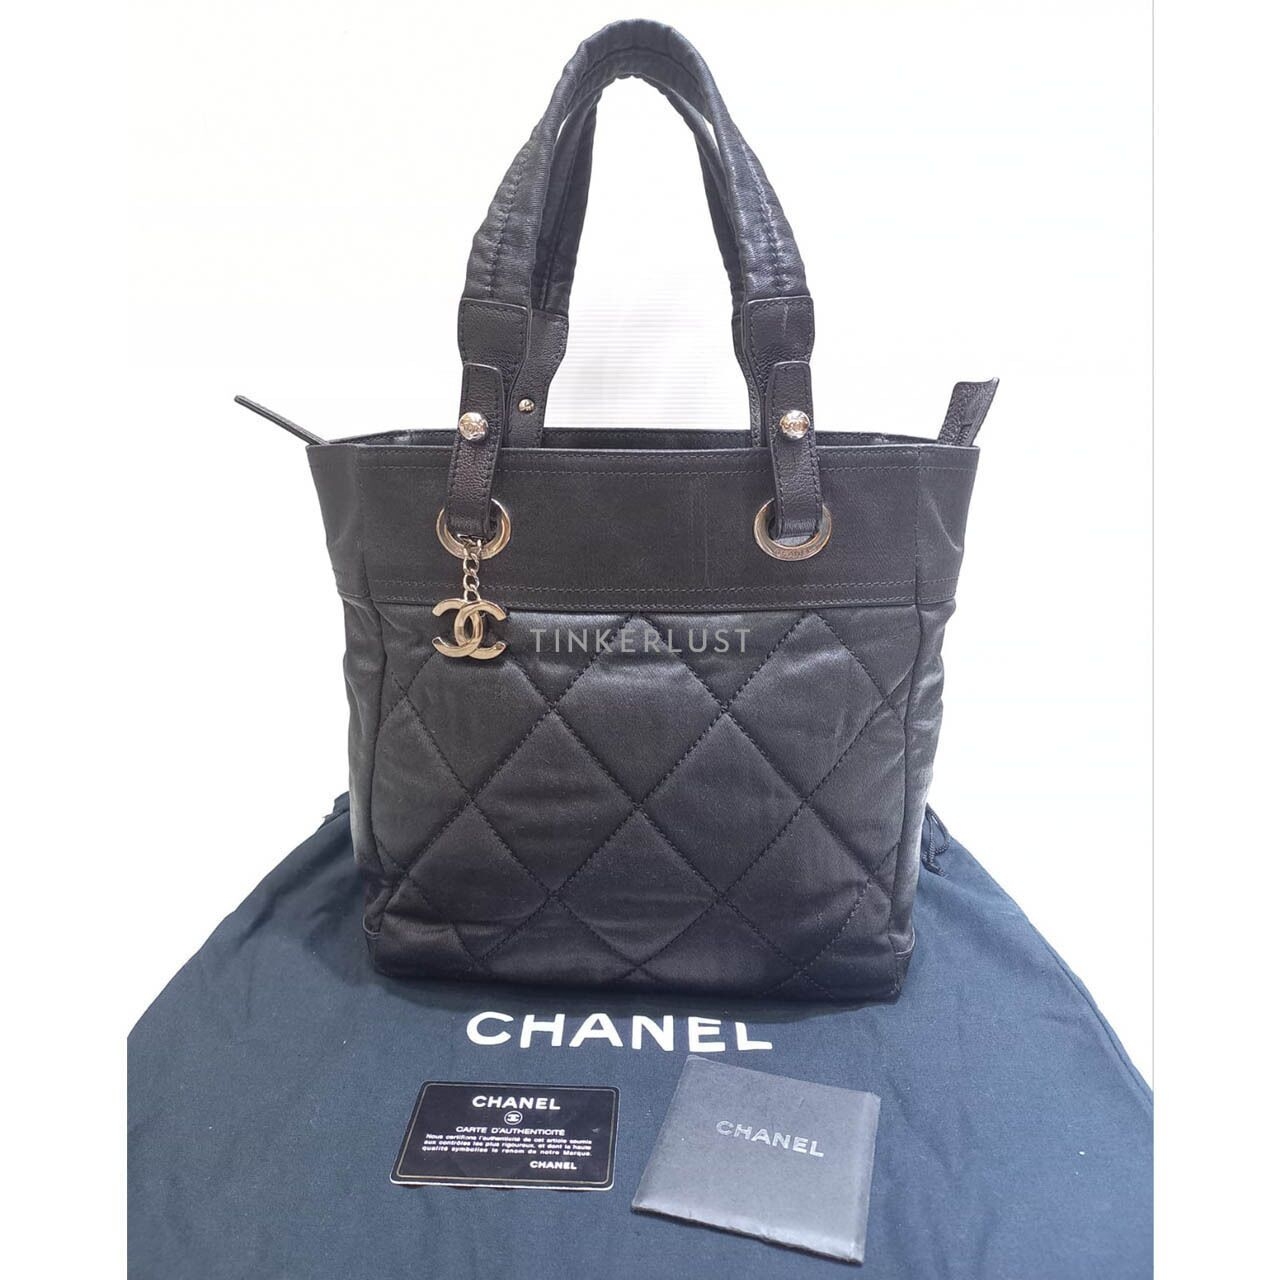 Chanel Biaritz PM Black Metalic SHW #11 2010 Tote Bag